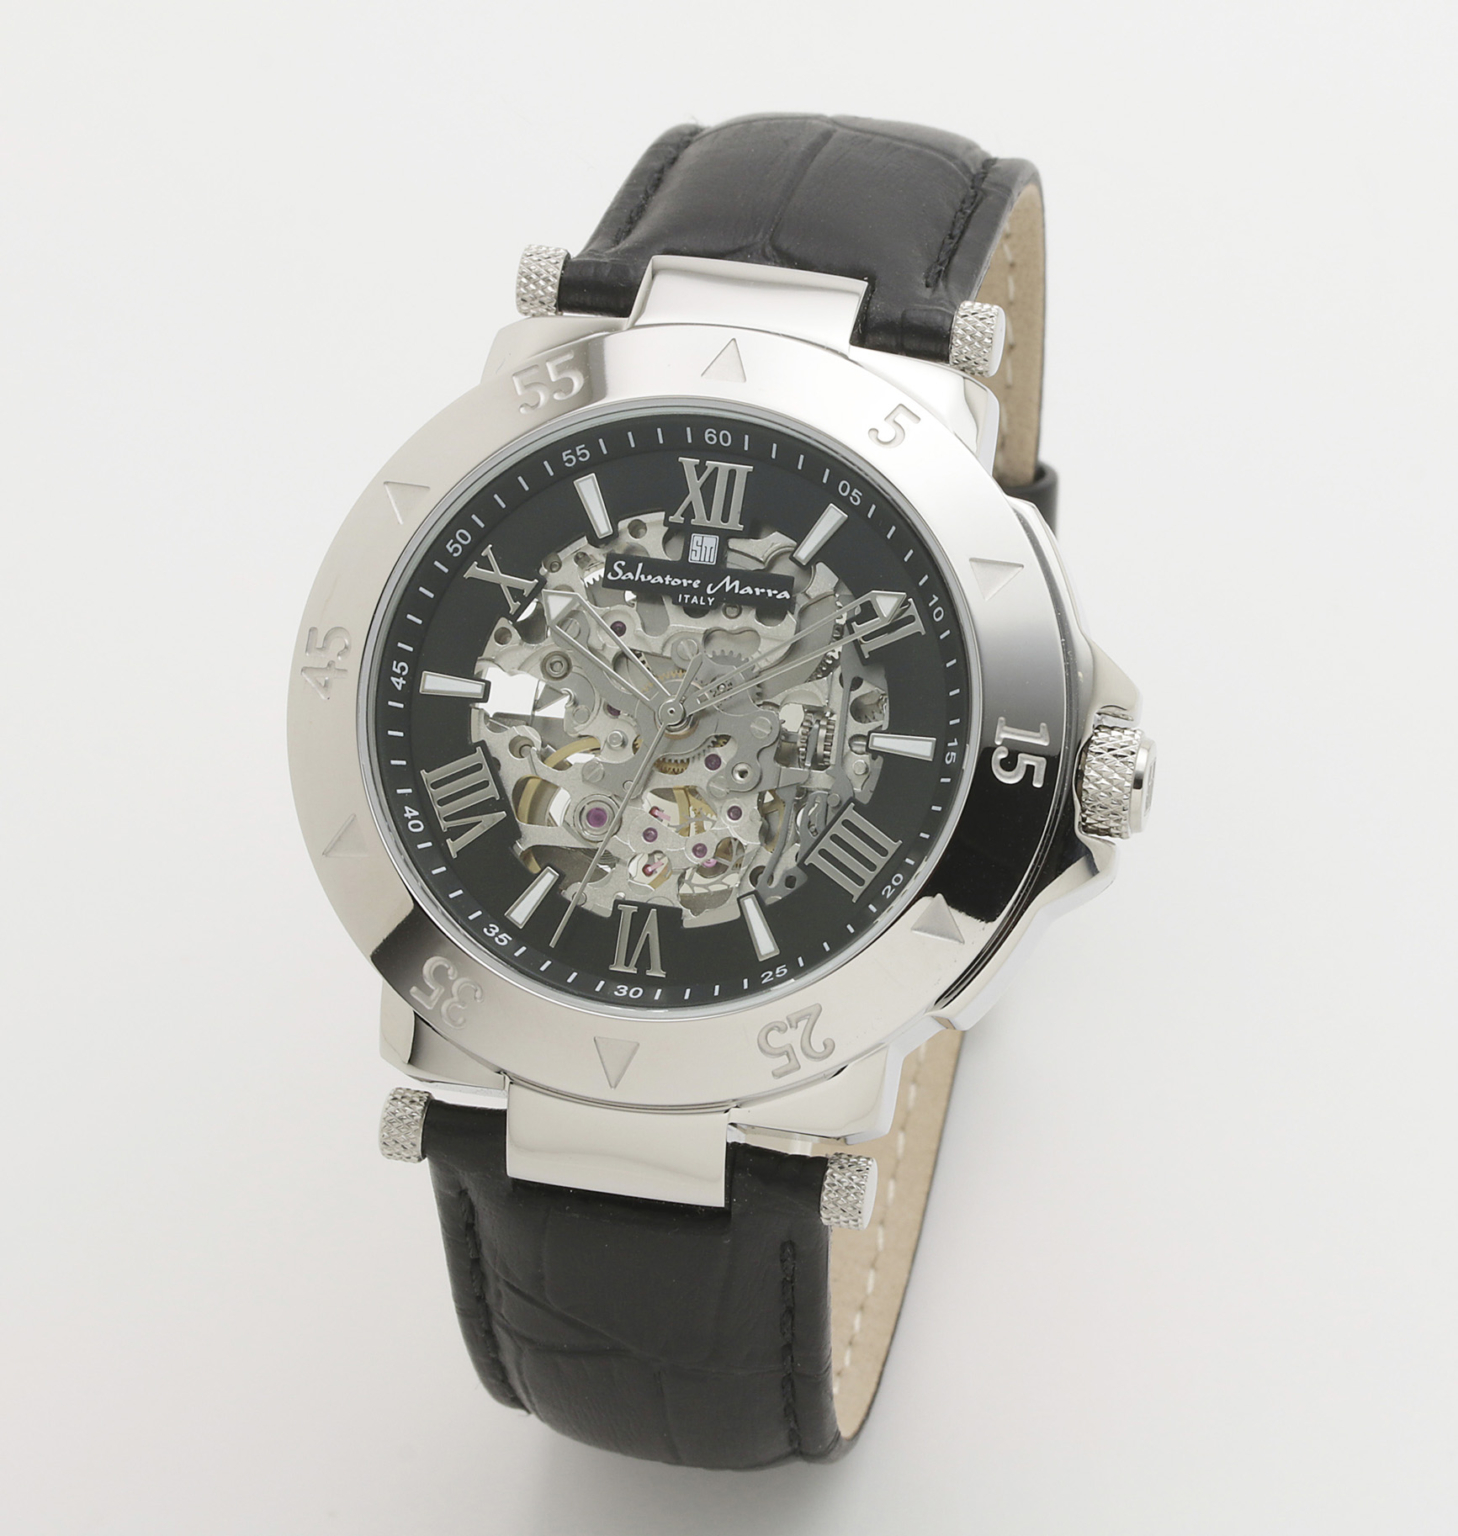 正規品☆新品サルバトレーマーラ腕時計 SM13115-SSBKSV+showroom